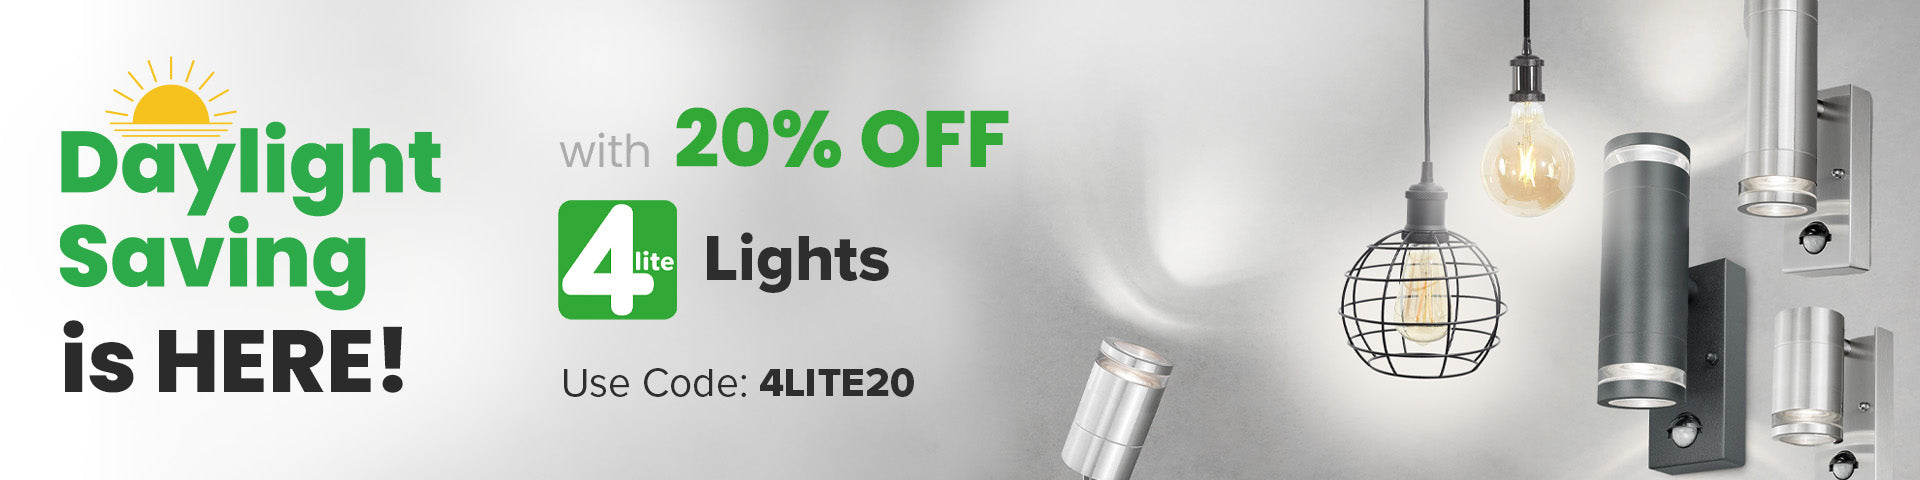  20% OFF 4Lite Lighting Range